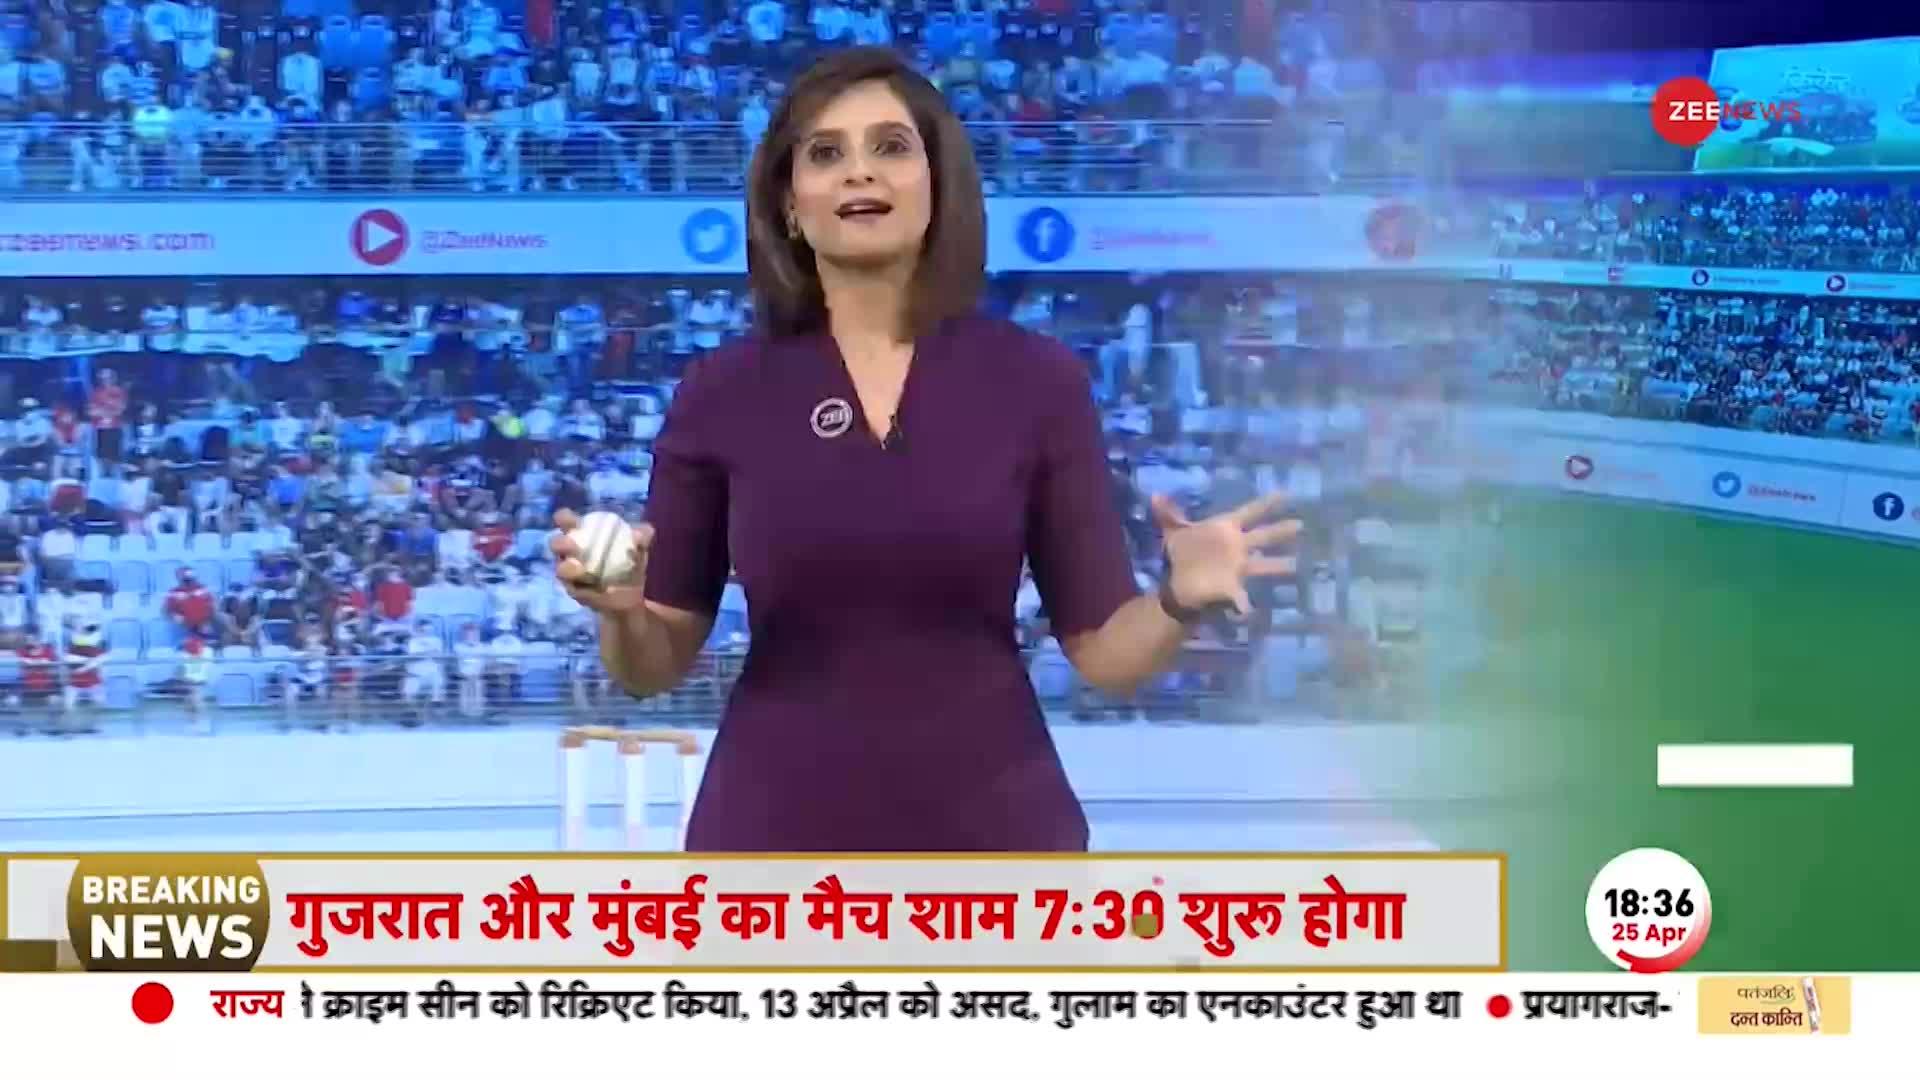 Watch Video: टीम इंडिया के दरवाजे हो गए थे बंद, अब MS Dhoni ने बदल दी किस्मत